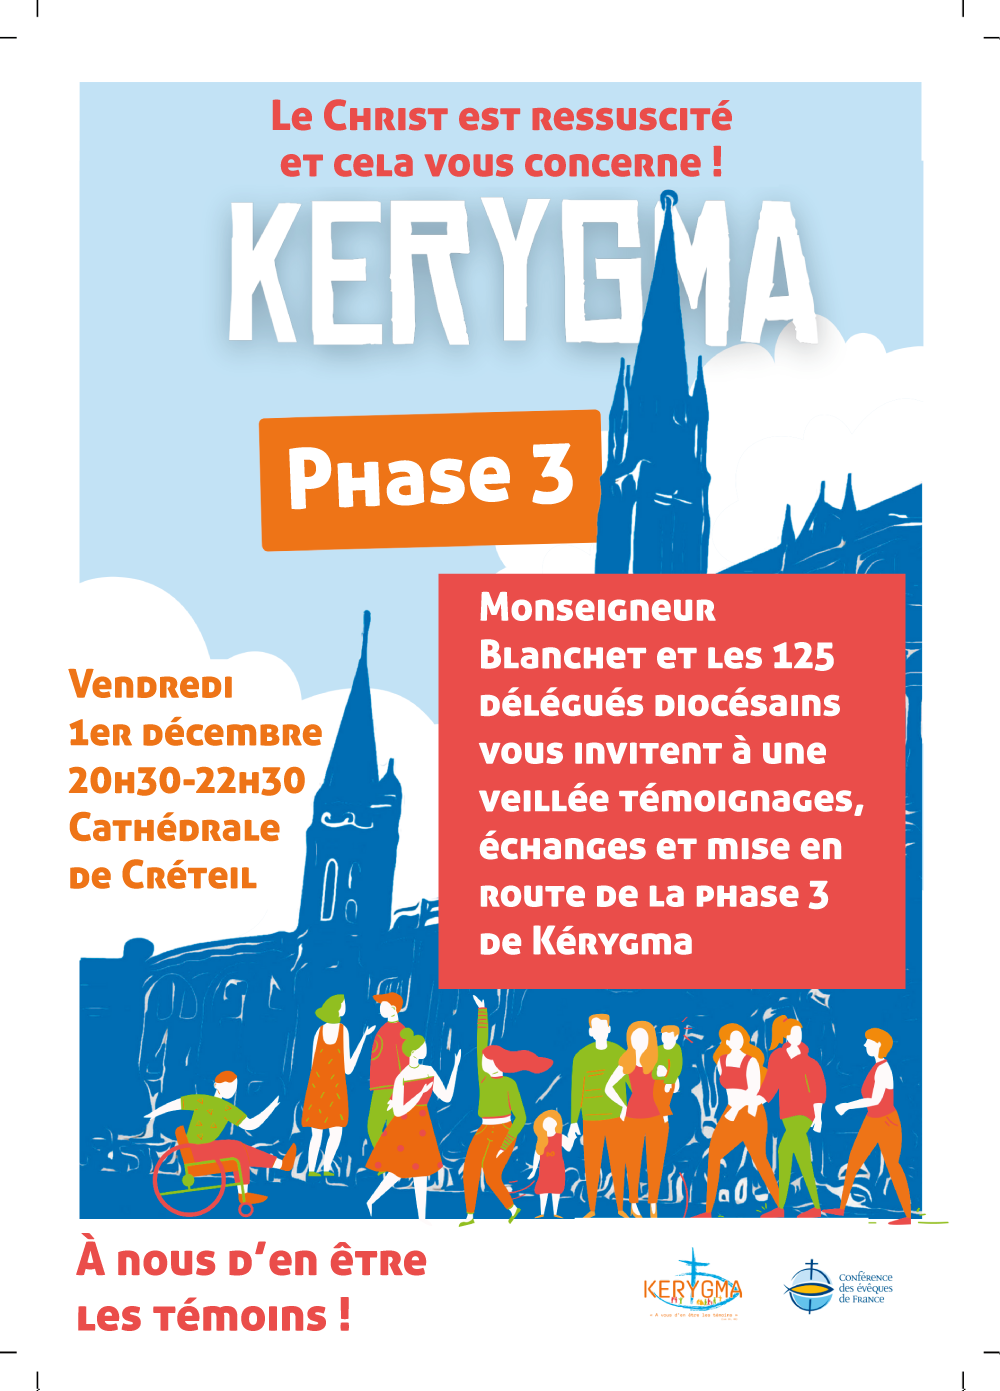 Kérygma phase 3 : rendez-vous vendredi 1er décembre à 20h30 à la cathédrale